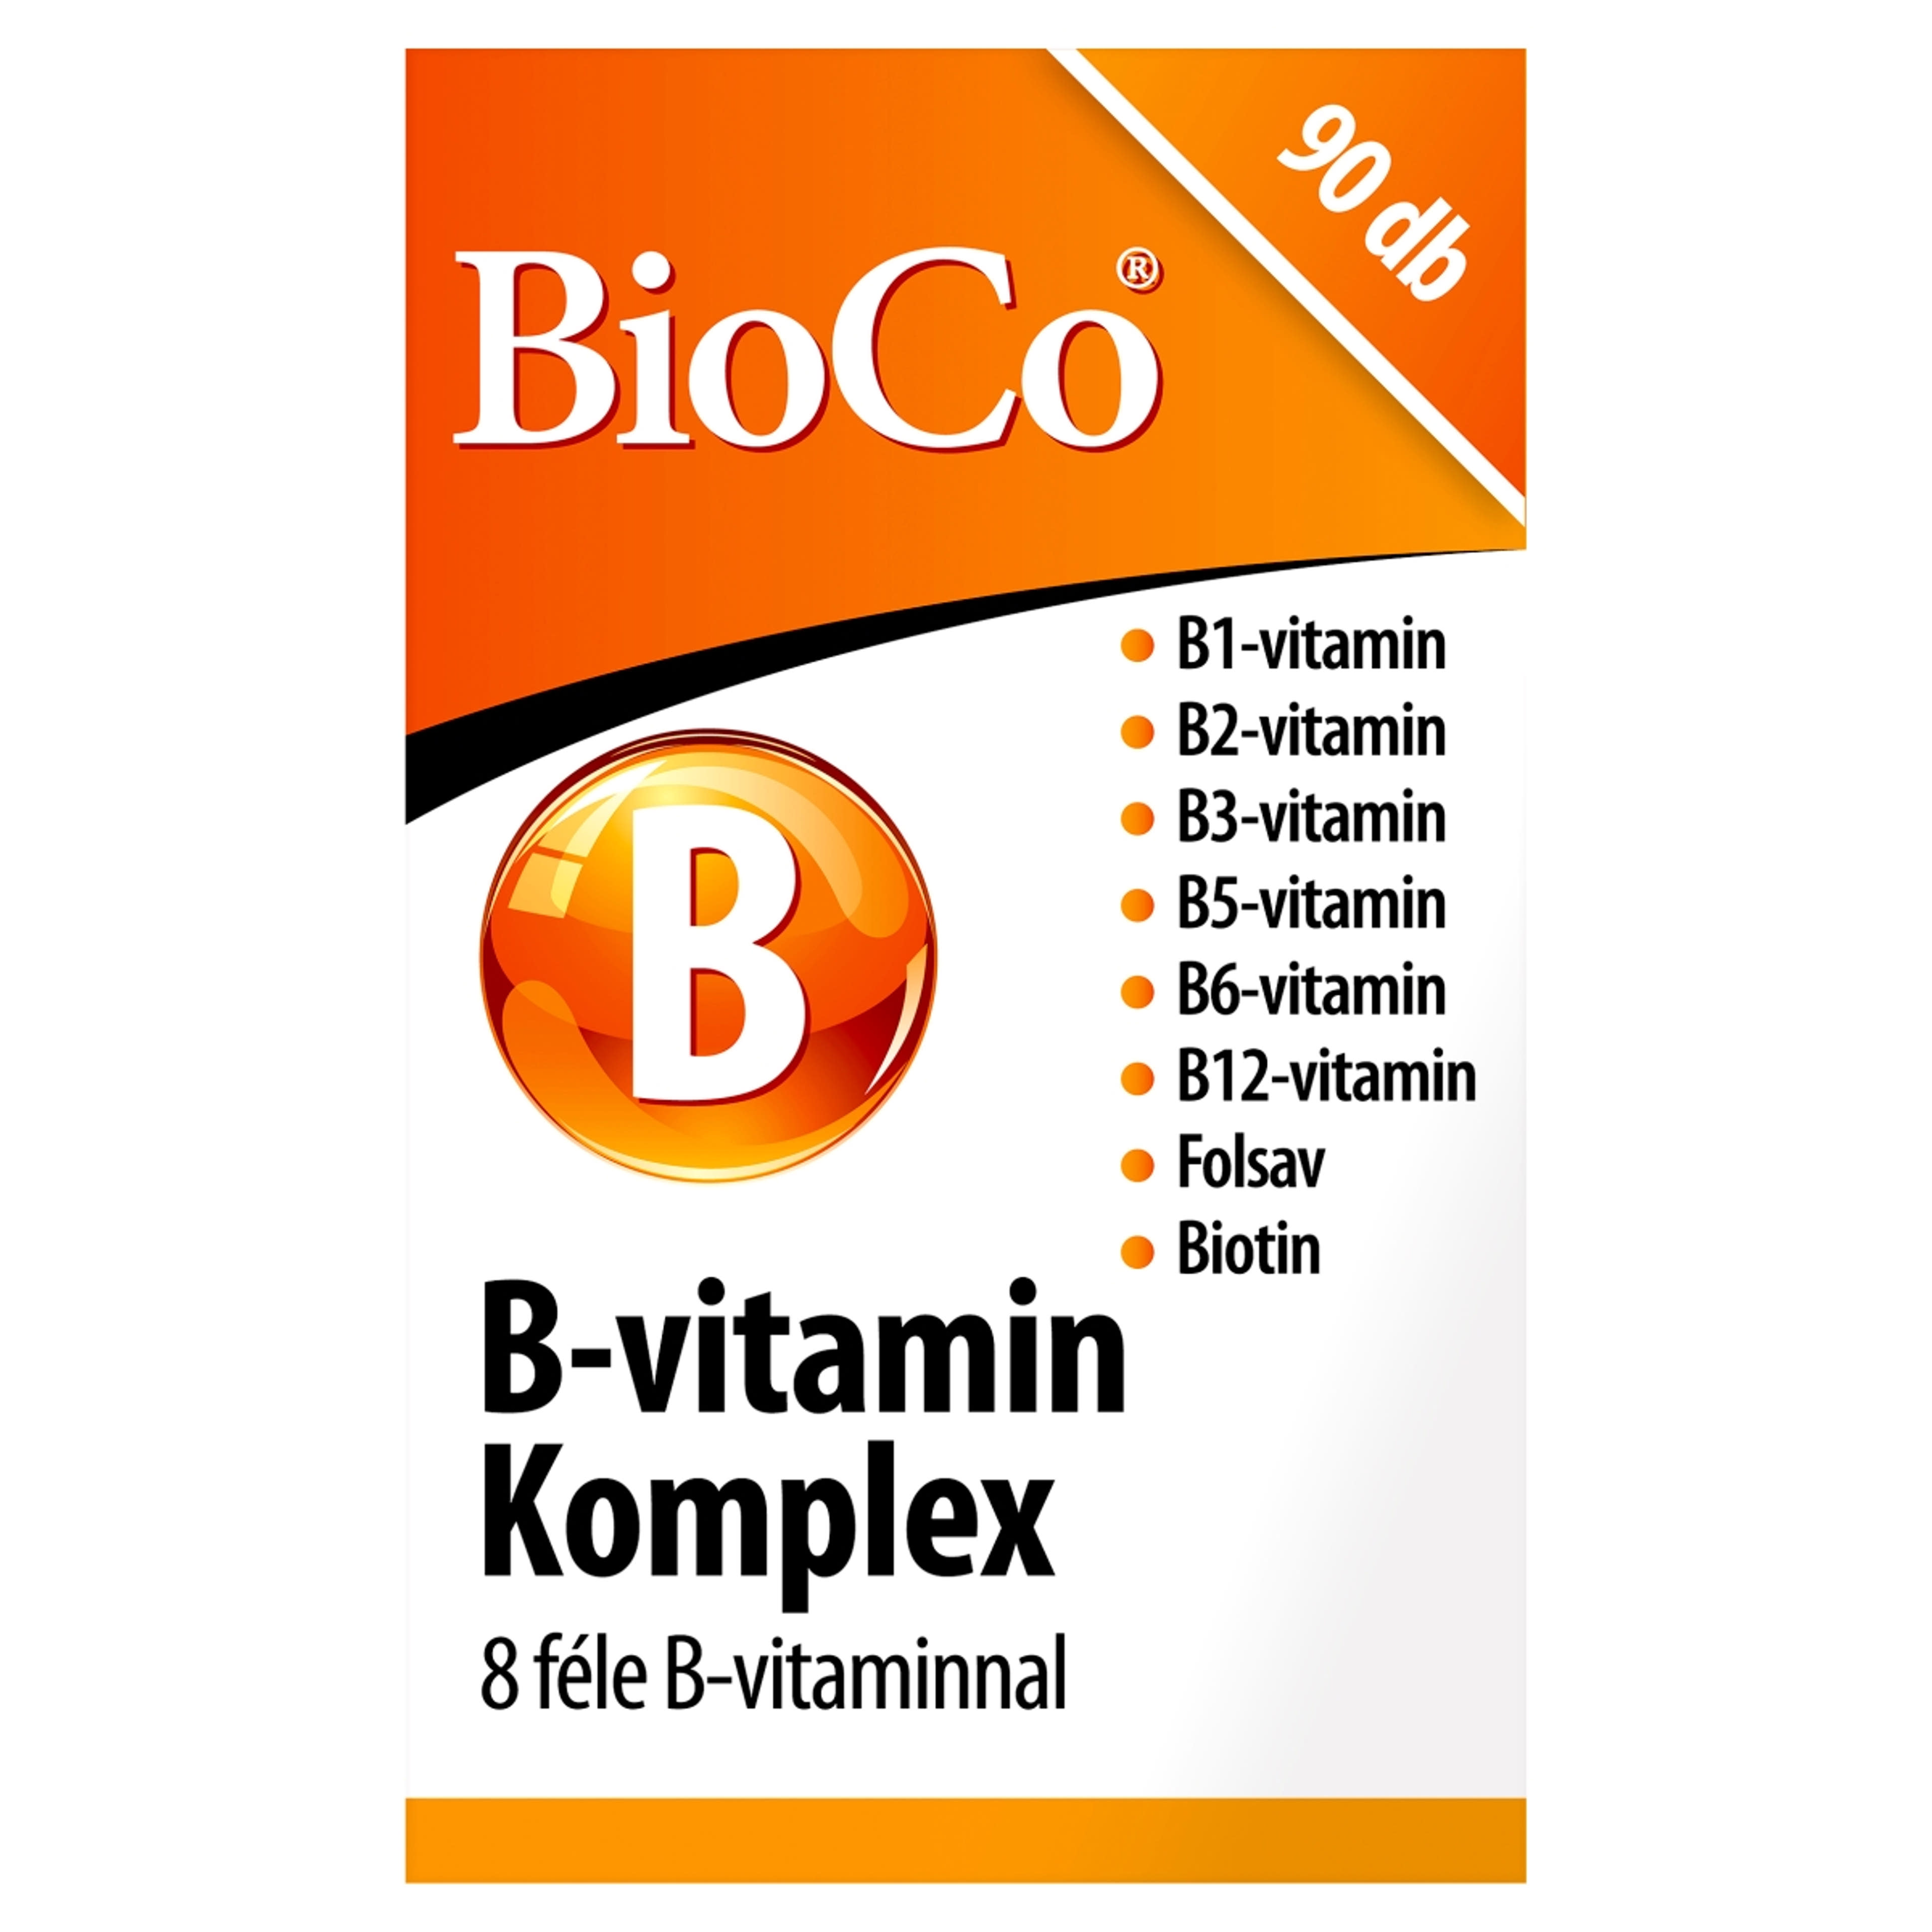 Bioco B-vitamin komplex étrendkiegészítő tabletta - 90 db